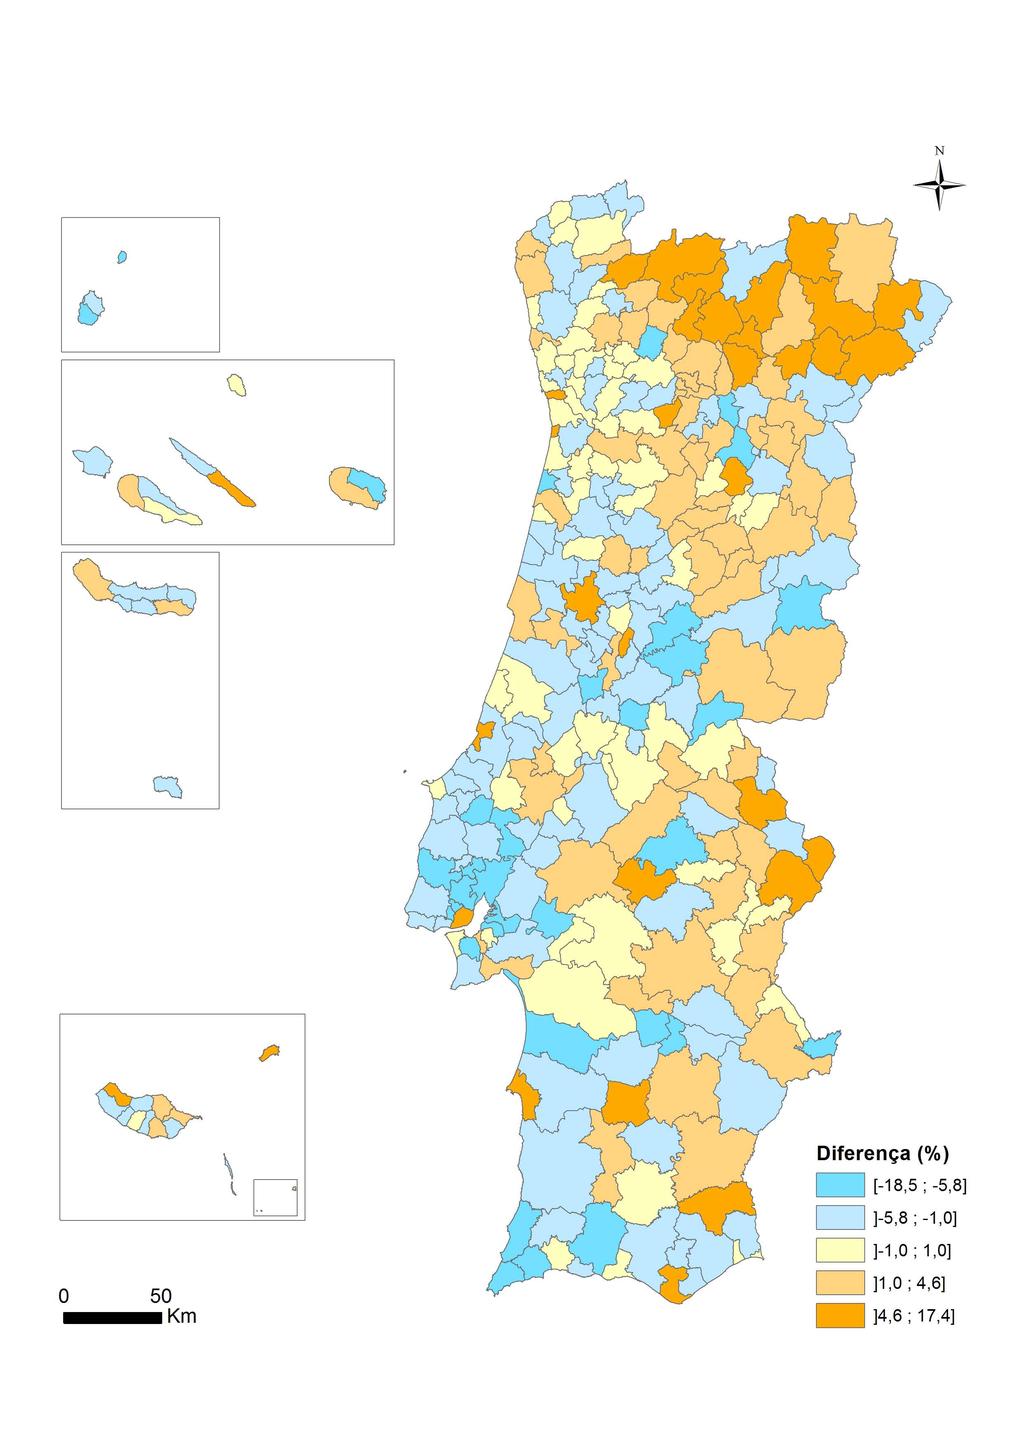 oposição, os municípios com valores mais elevados de sobrestimação situam-se no Alto Alentejo e Alto de Trás-os-Montes.